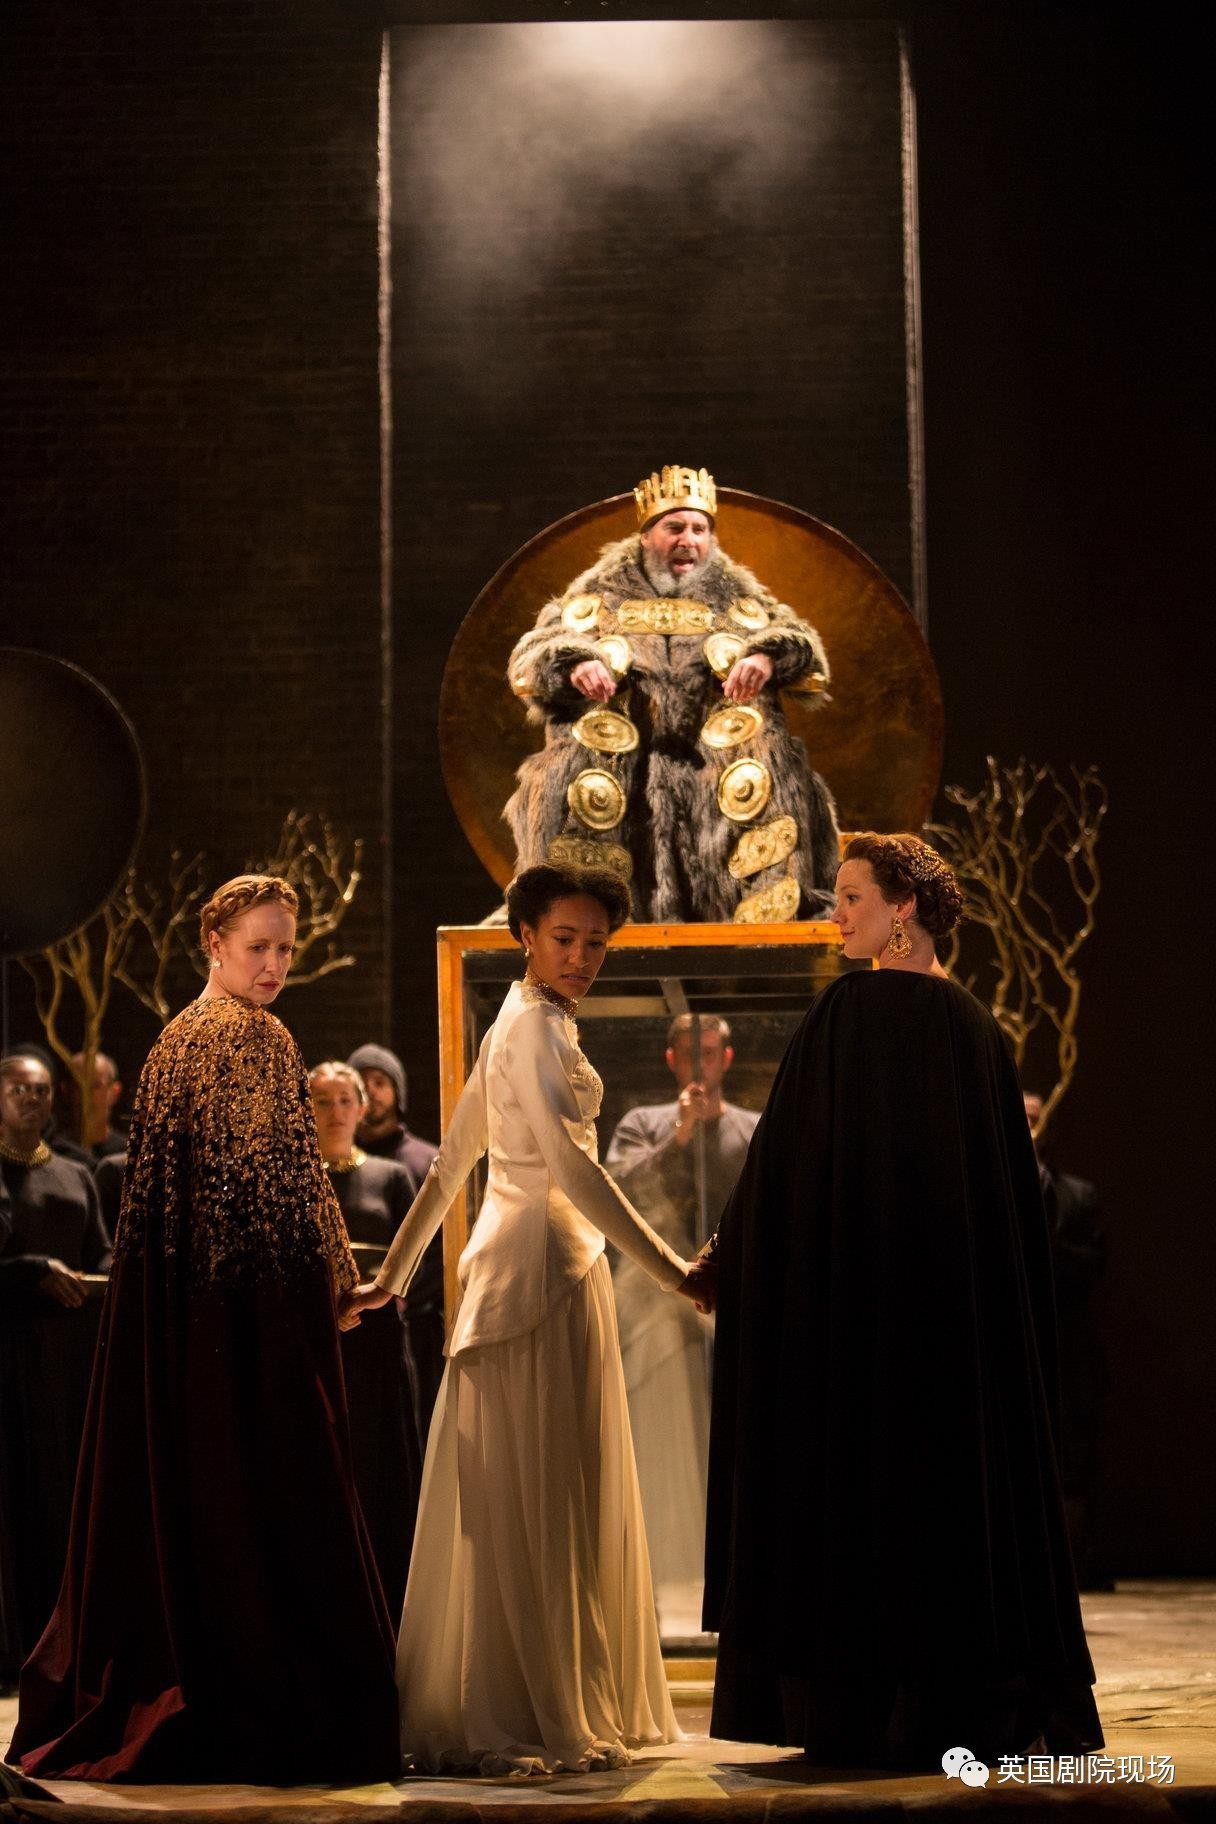 9月24日,皇家莎士比亚剧团演绎的经典话剧《李尔王》即将在中南剧场